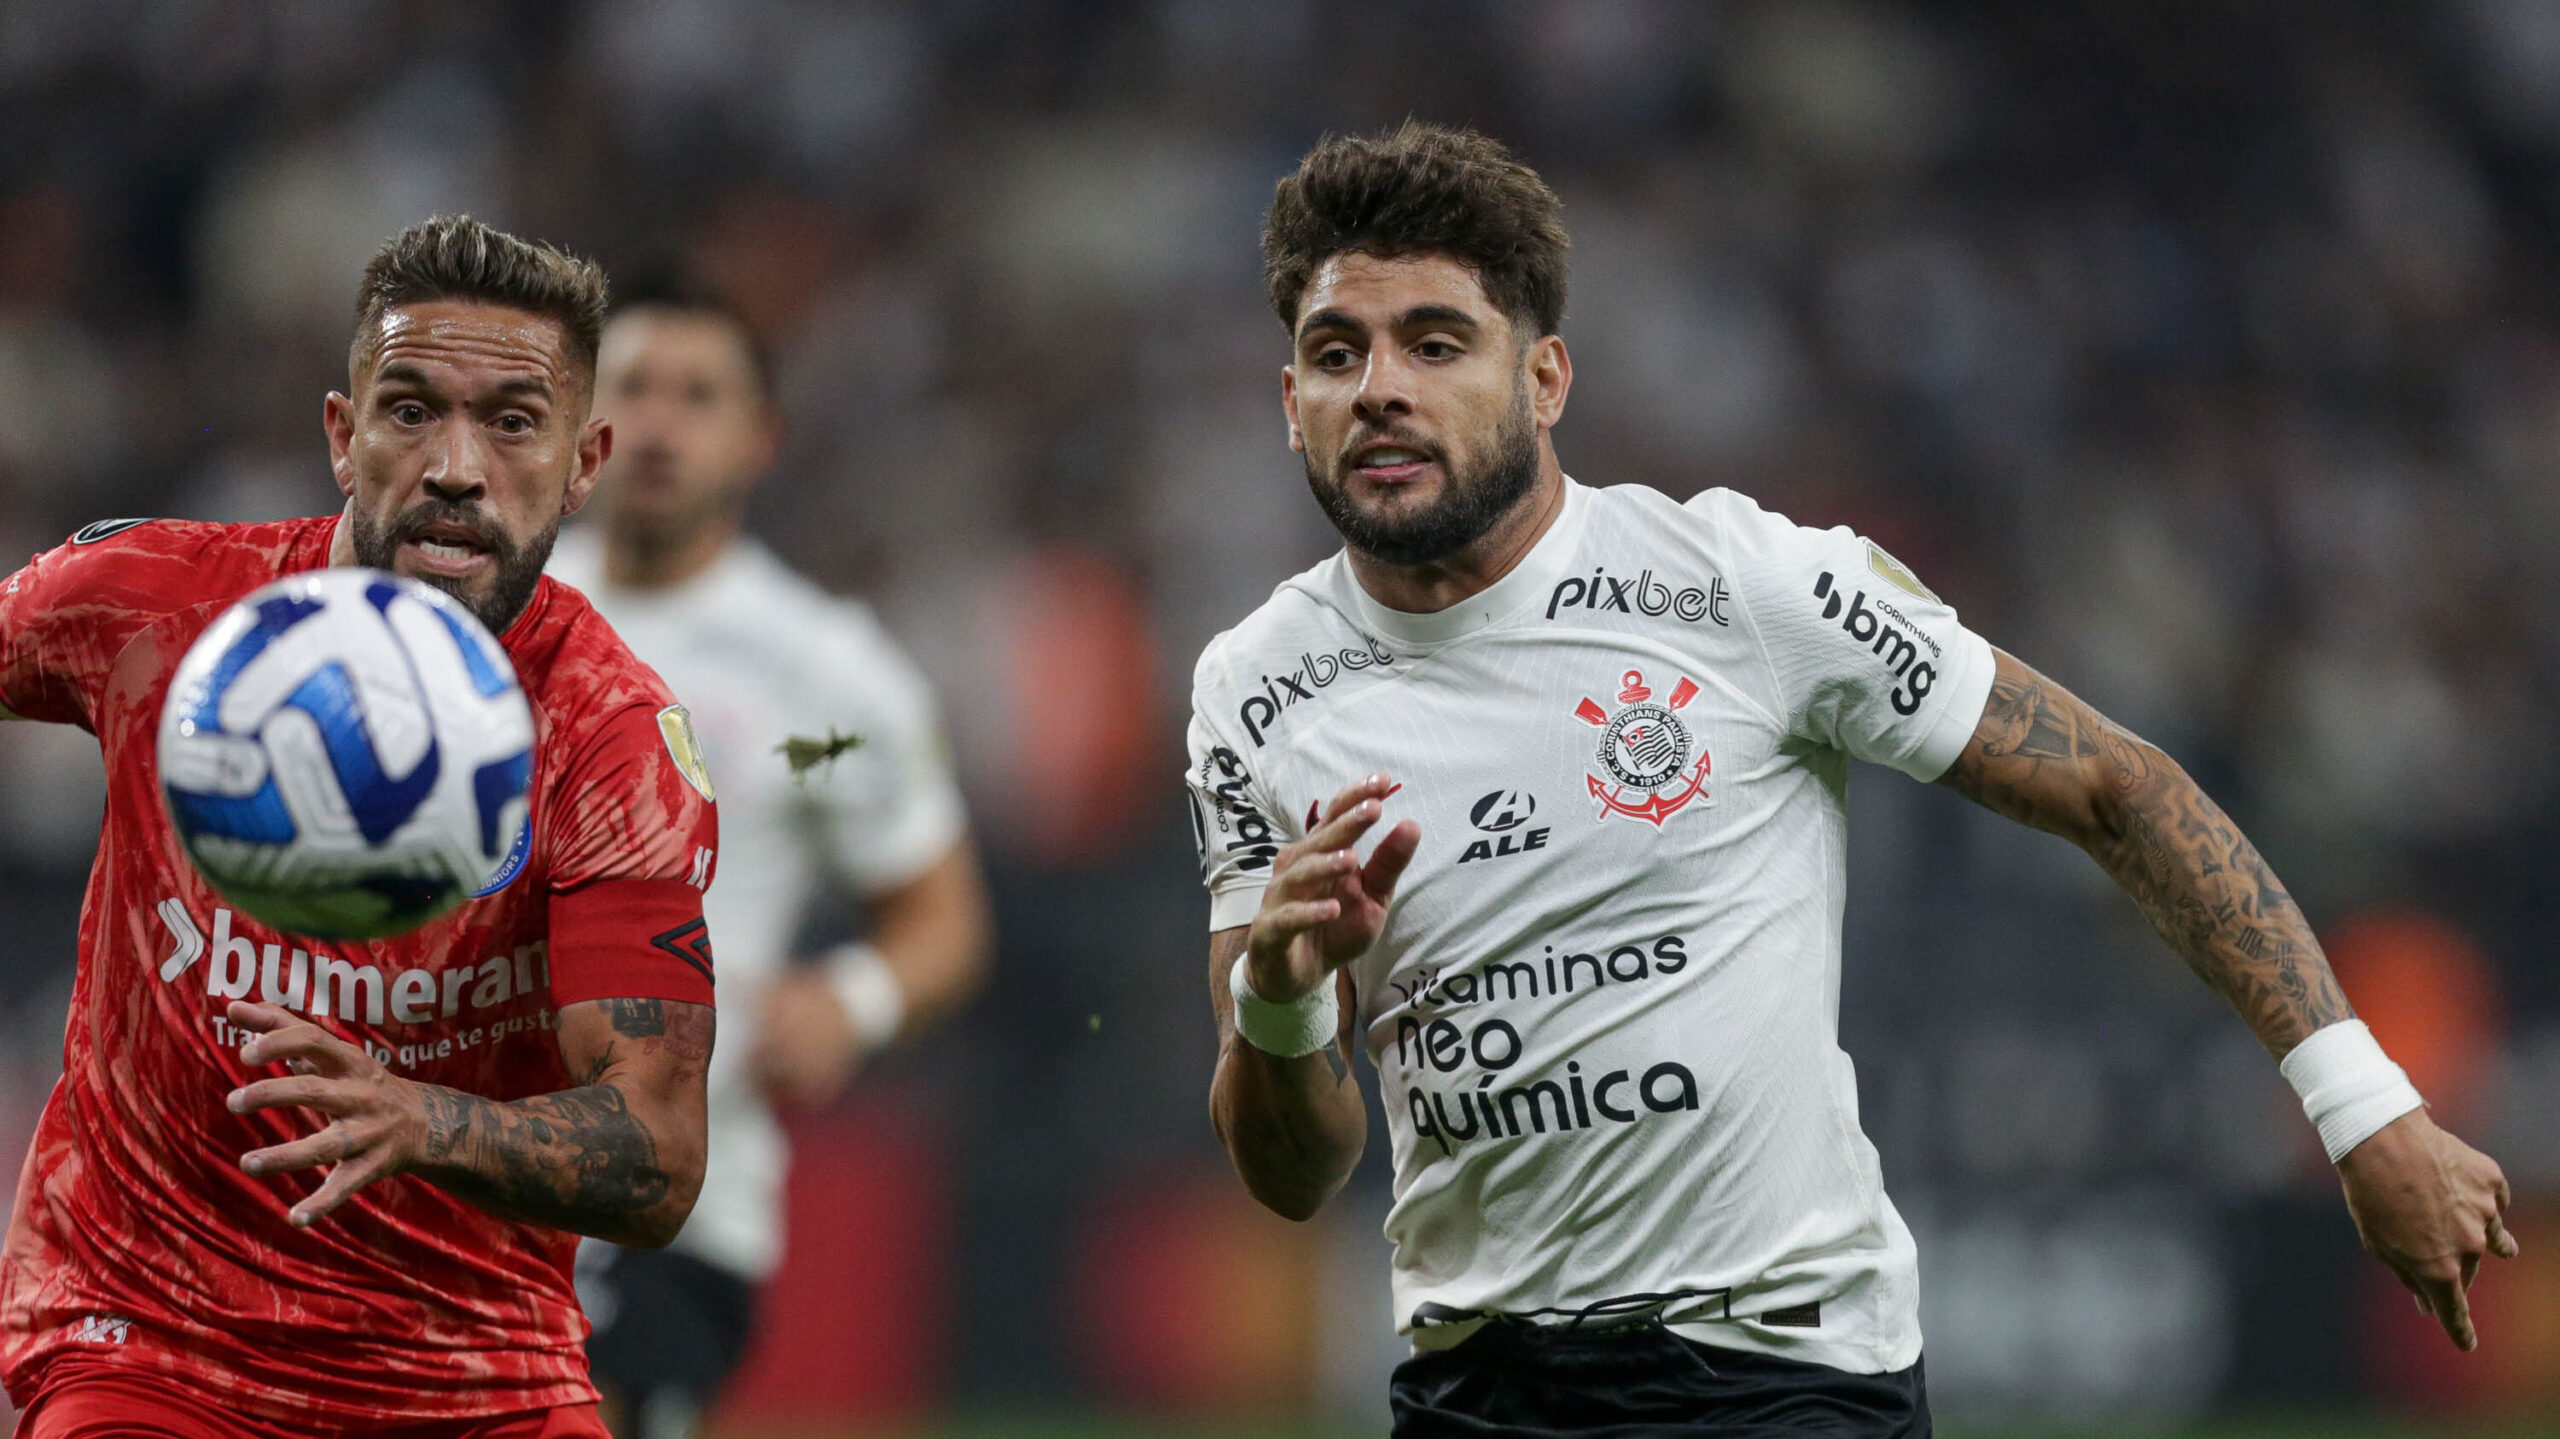 À base de pênaltis, Flamengo consegue milagre contra o Coritiba e vai às  quartas - ESPN